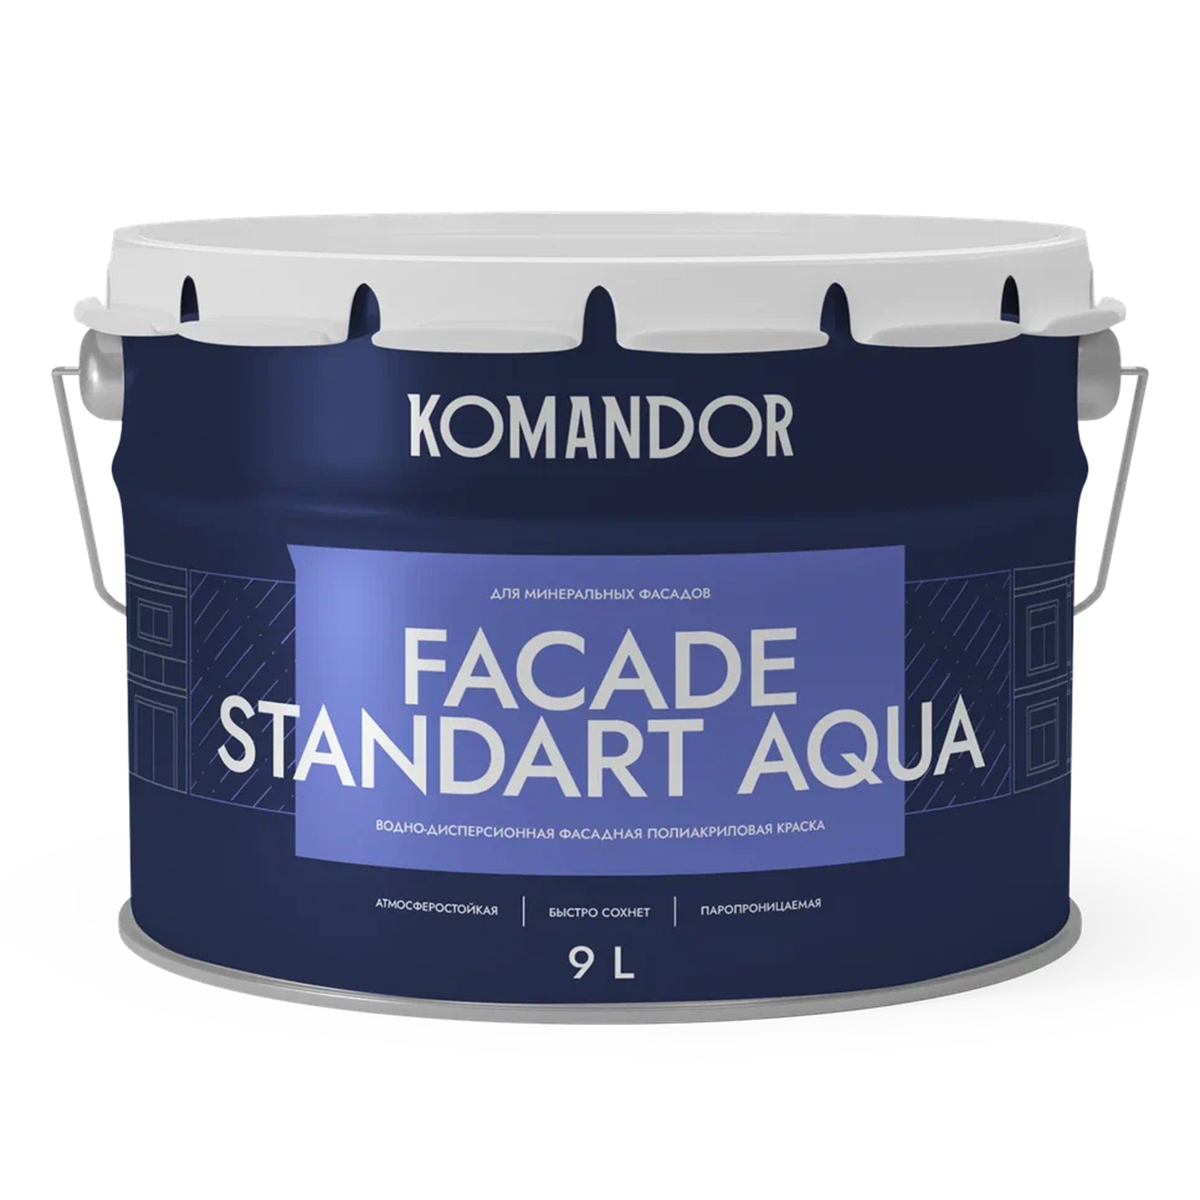 Краска фасадная Komandor Facade Standart Aqua, глубокоматовая, база А, белая, 9 л краска фасадная komandor facade silicon aqua глубокоматовая база с бесцветный 2 7 л